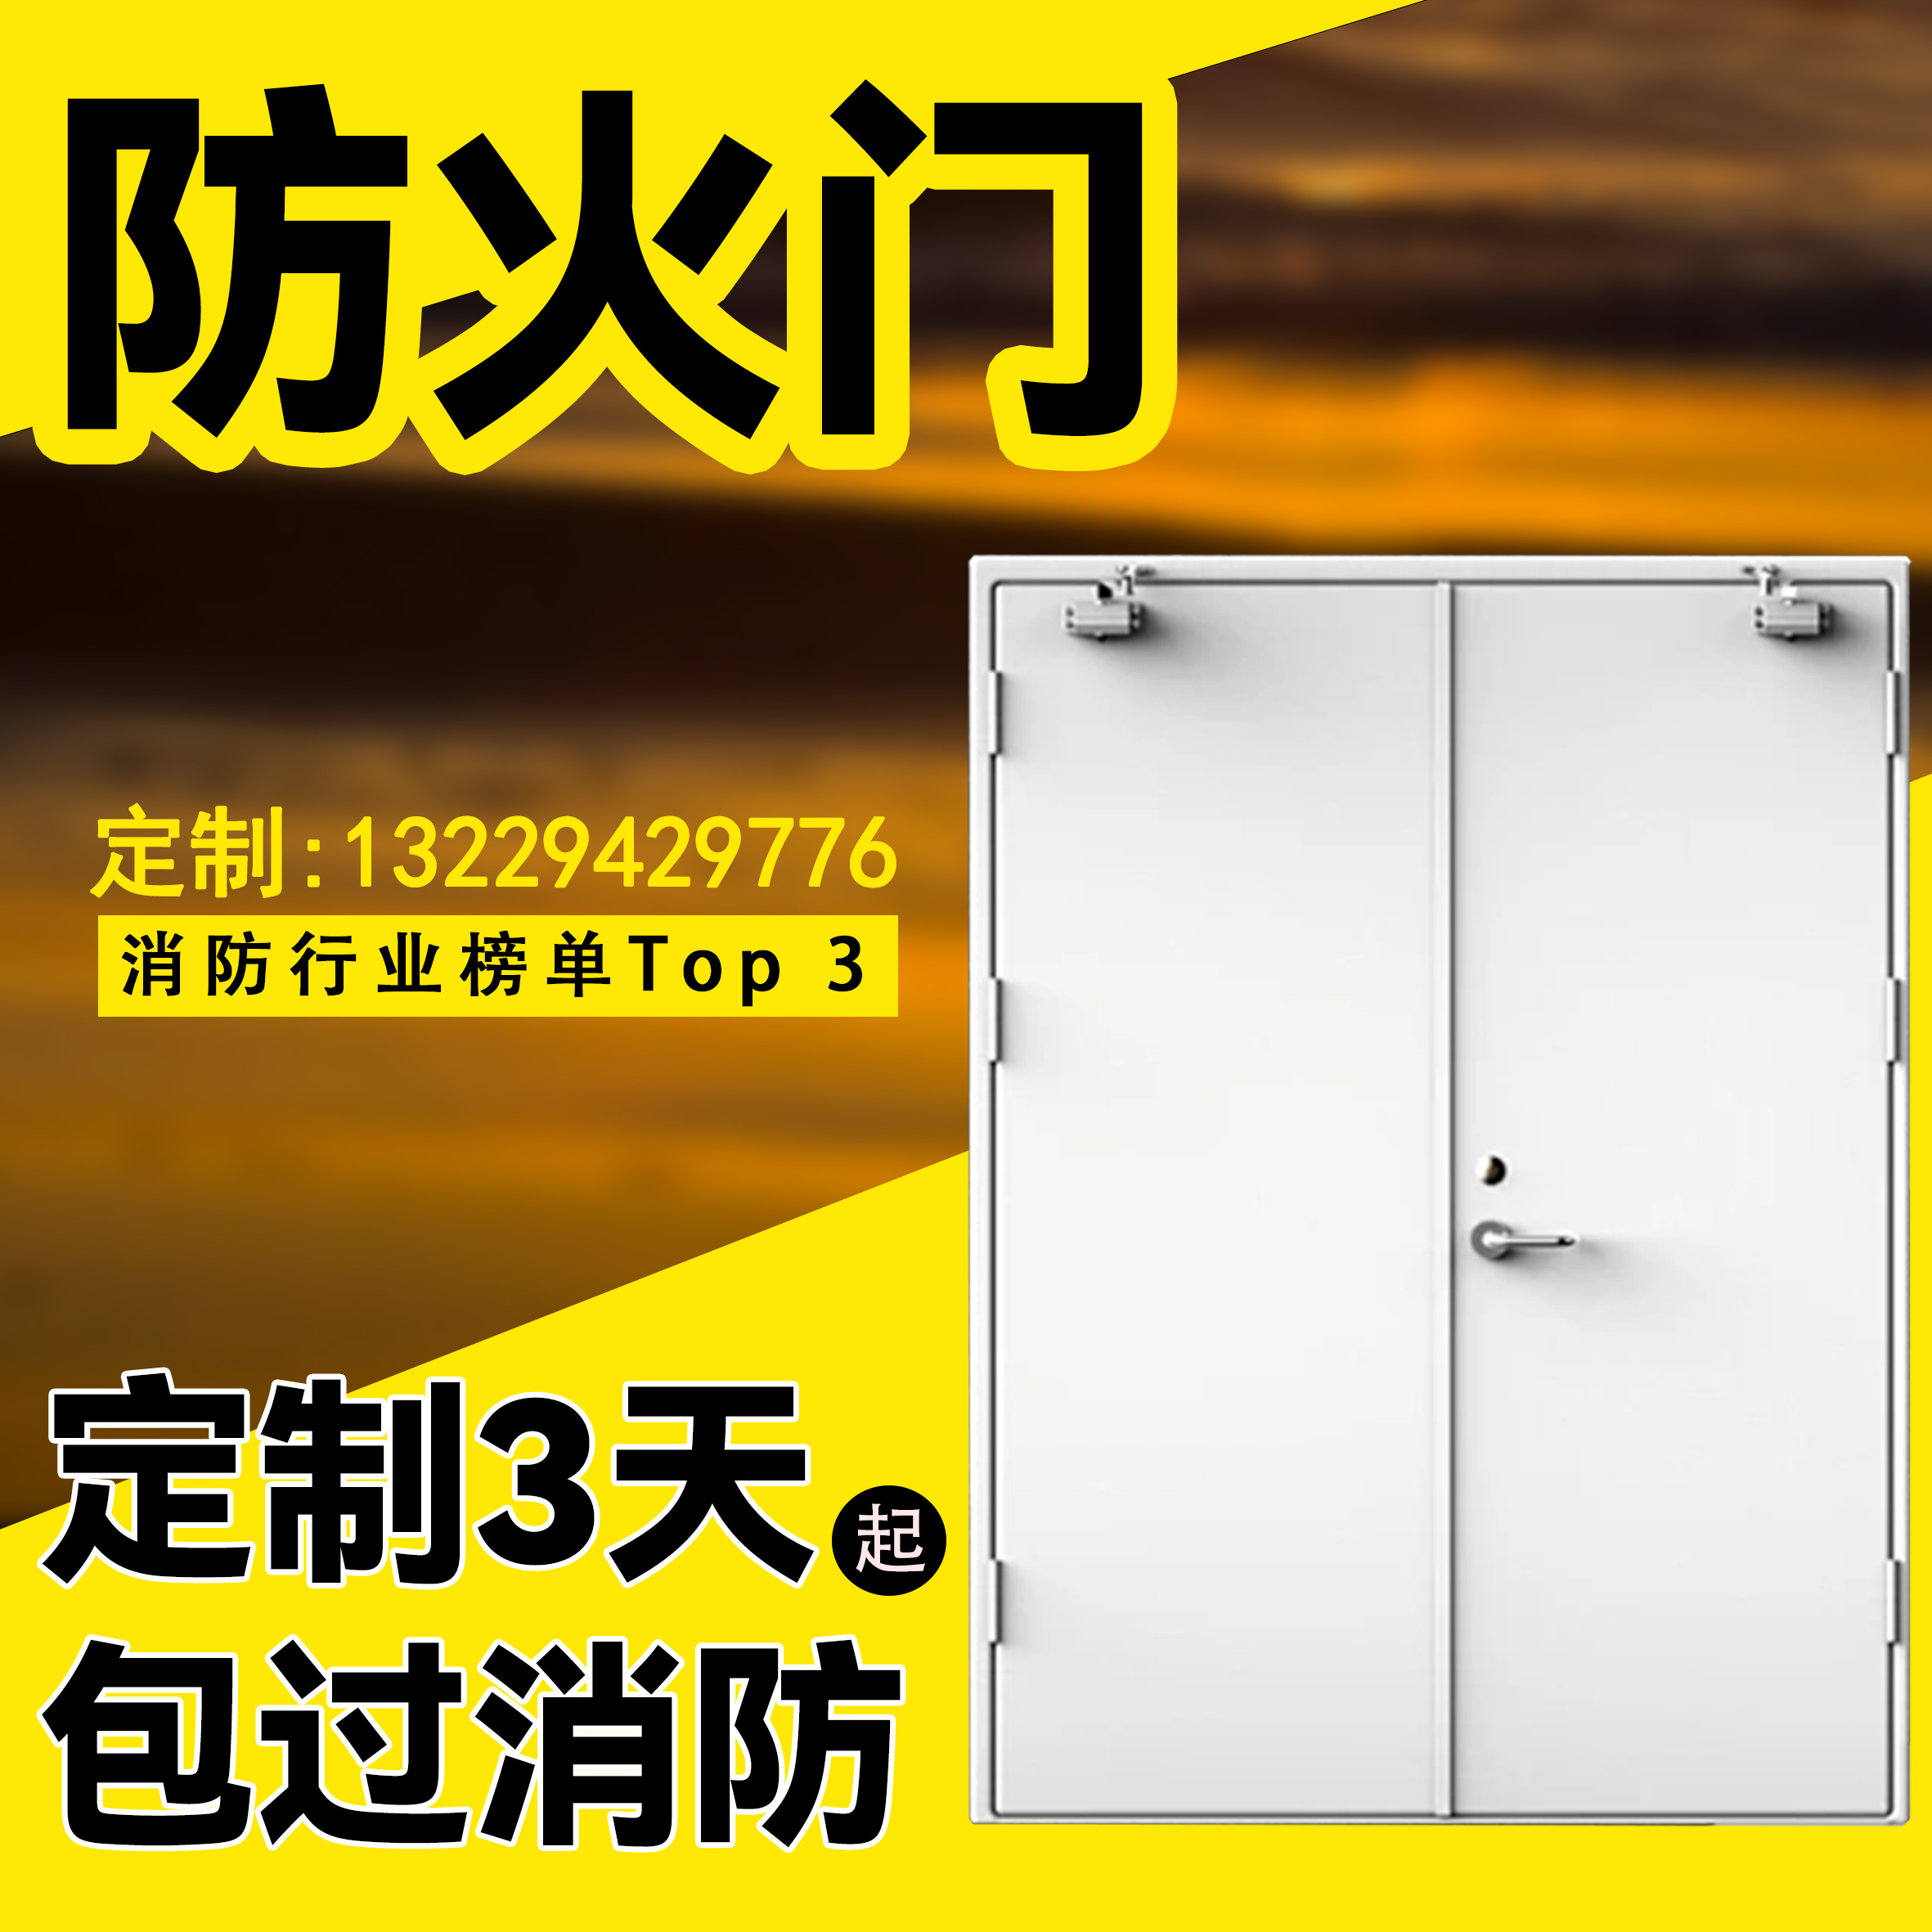 Steel Fireproof Door Factory Direct Sales Grade Grade Grade Grade Grade Spot Fire Door Stainless Steel Fire Door Can Be Installed-Taobao